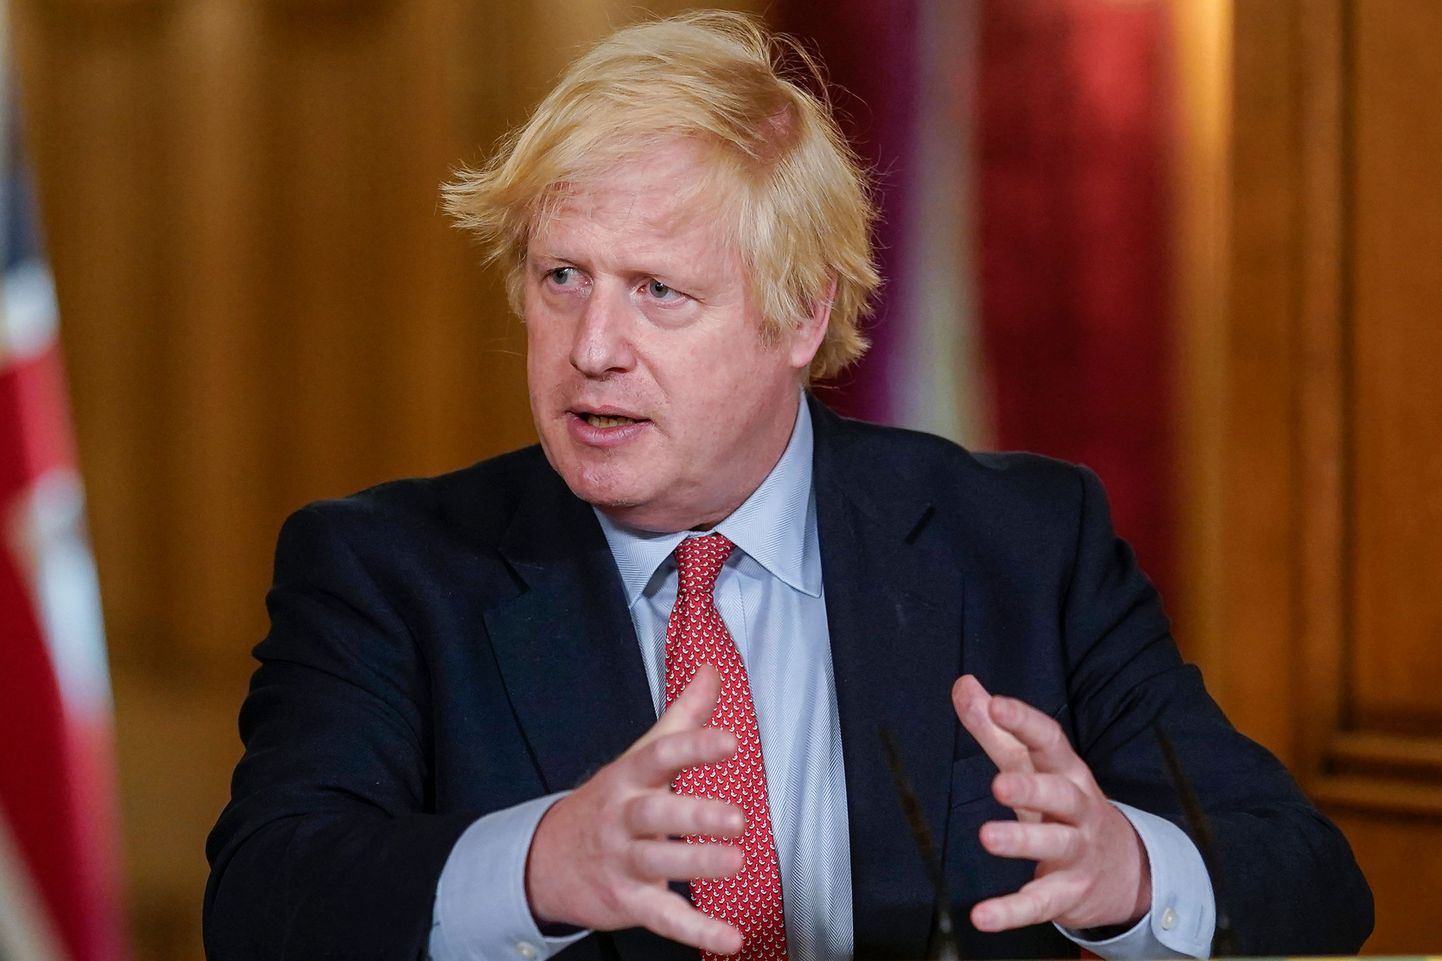 Briti peaminister Boris Johnson 25. mail koroonaviiruse teemalisel pressikonverentsil